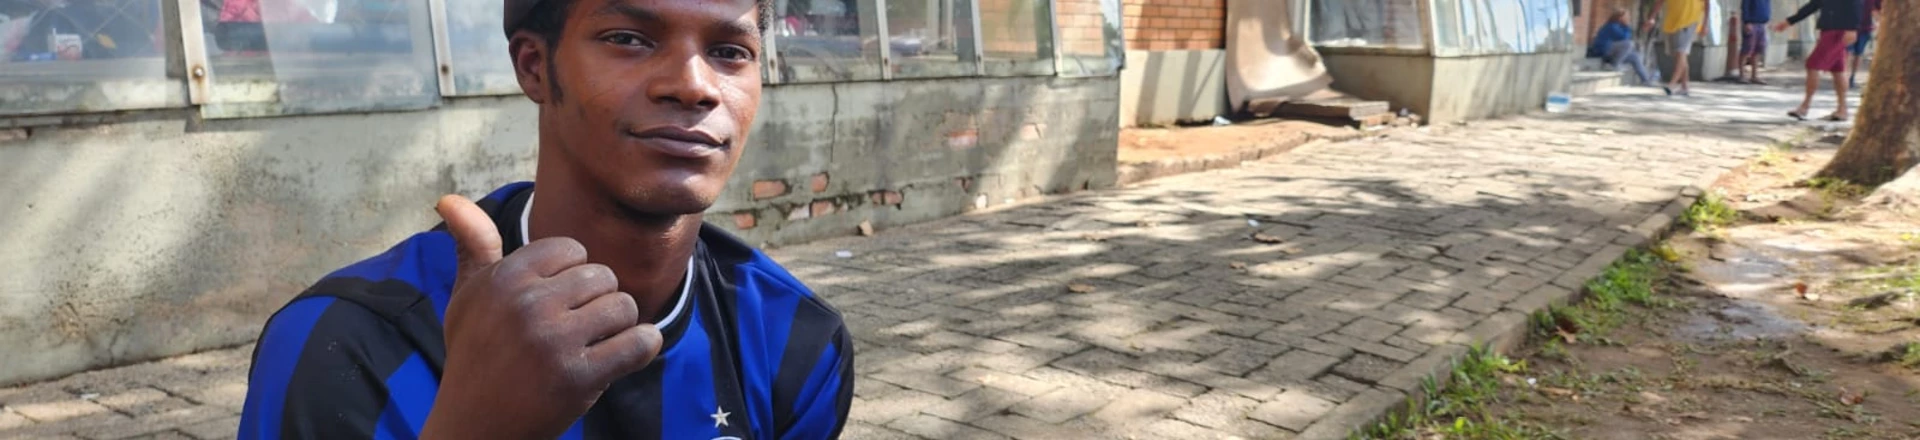 Carlos Santos Soares, de 24 anos, viveu uma jornada angustiante ao passar quase três dias inteiro agarrado ao telhado de uma casa em Canoas.